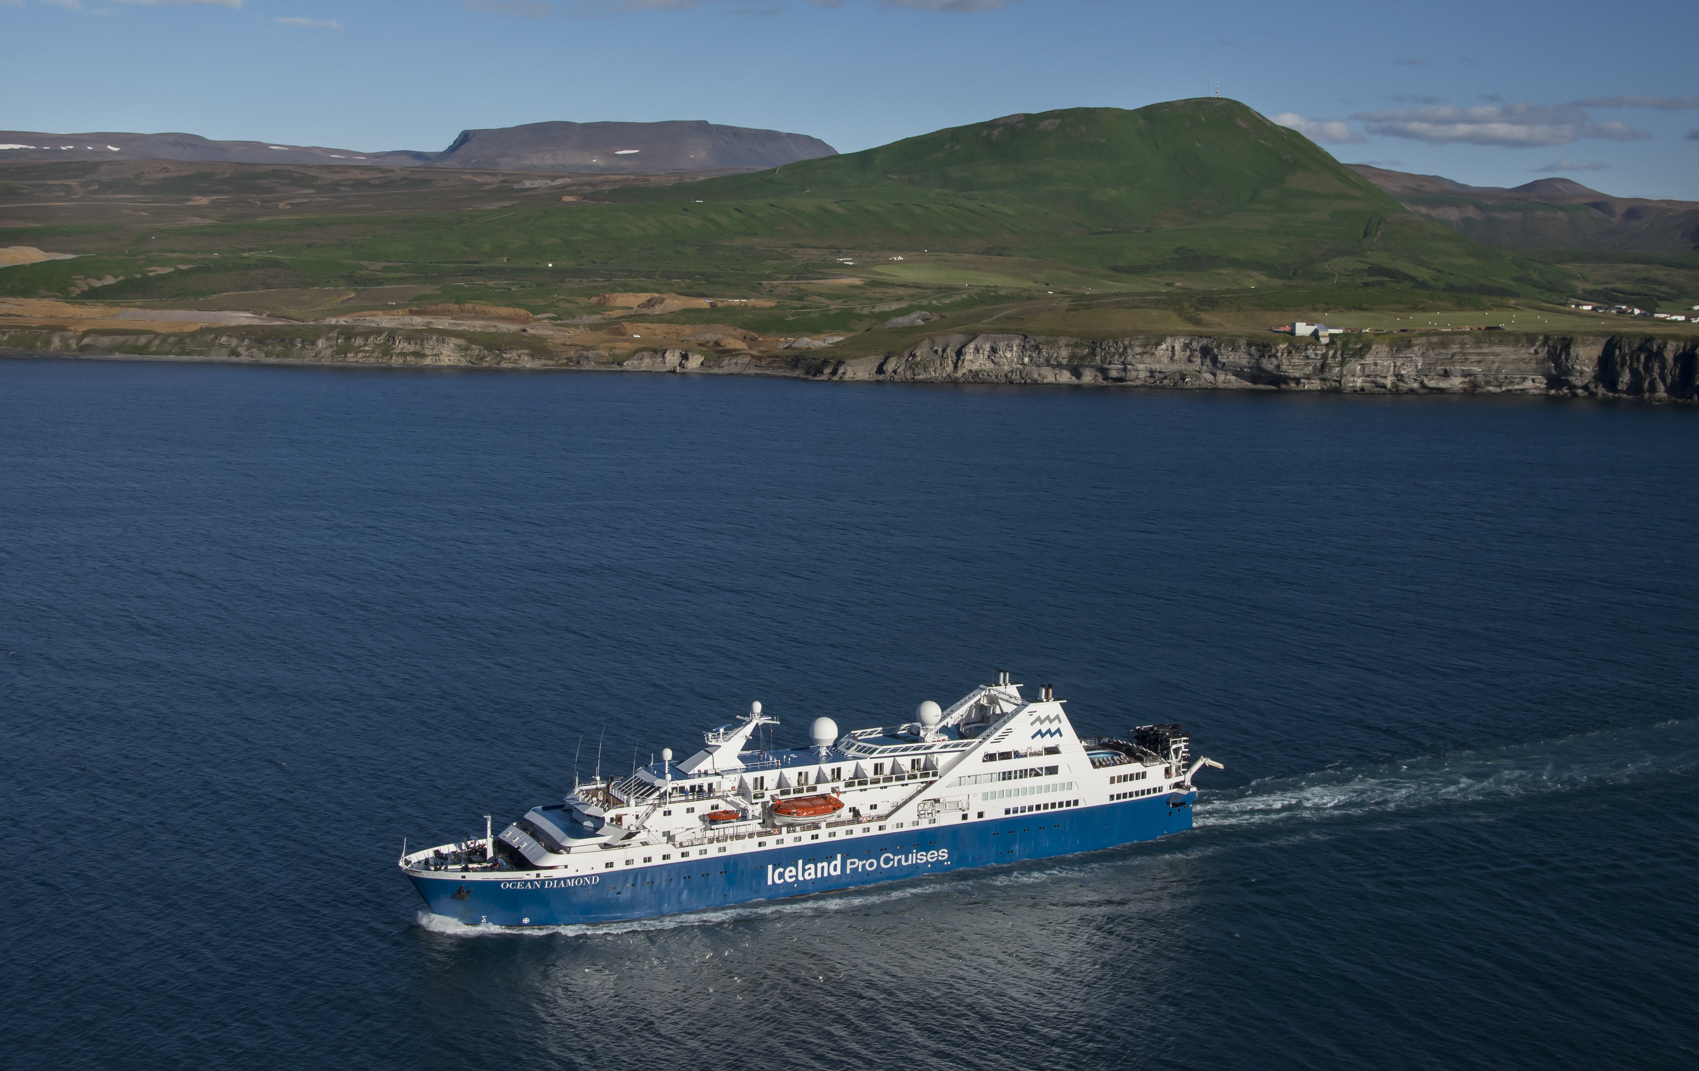 Iceland ProCruises hat den Frühbucherrabatt für alle Reisen aus dem Programm für den Sommer 2019 um acht Wochen verlängert bis zum 28. Februar 2019